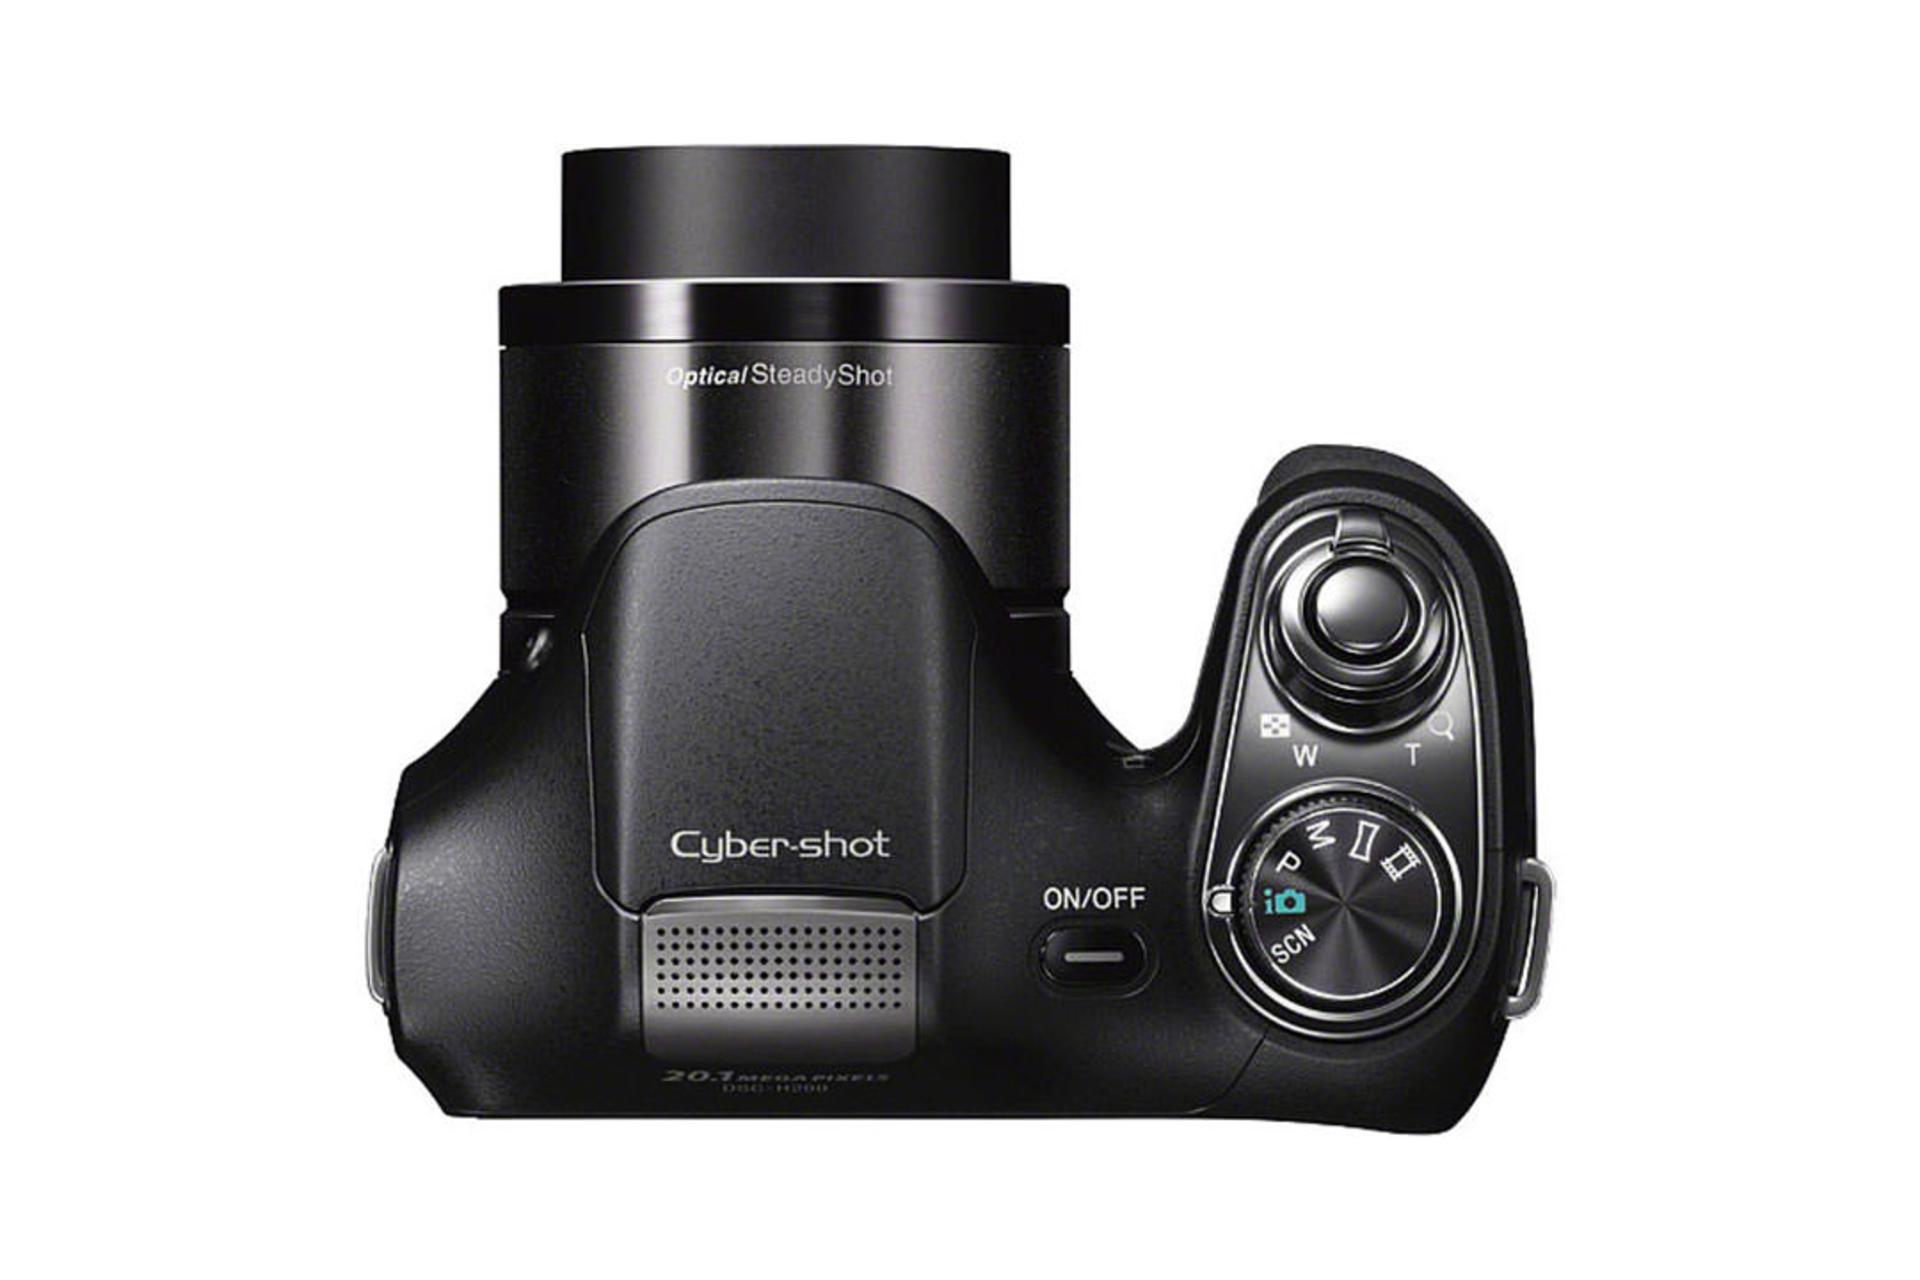 Sony Cyber-shot DSC-H200	